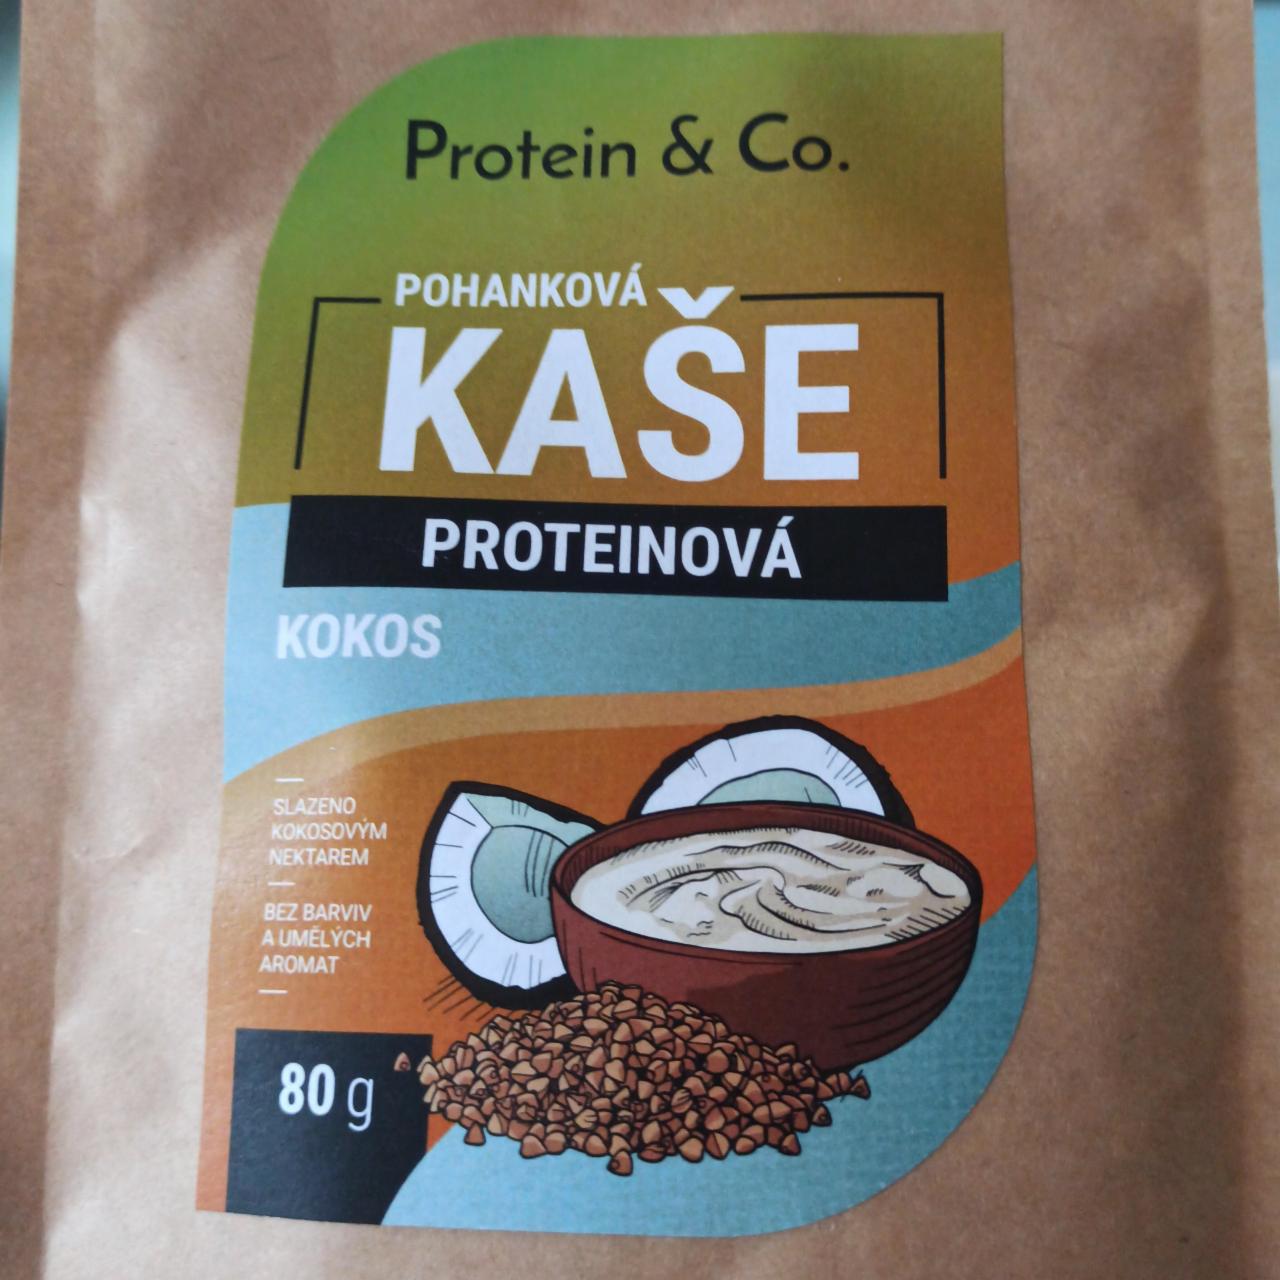 Fotografie - Pohanková proteinová kaše kokos Protein & Co.